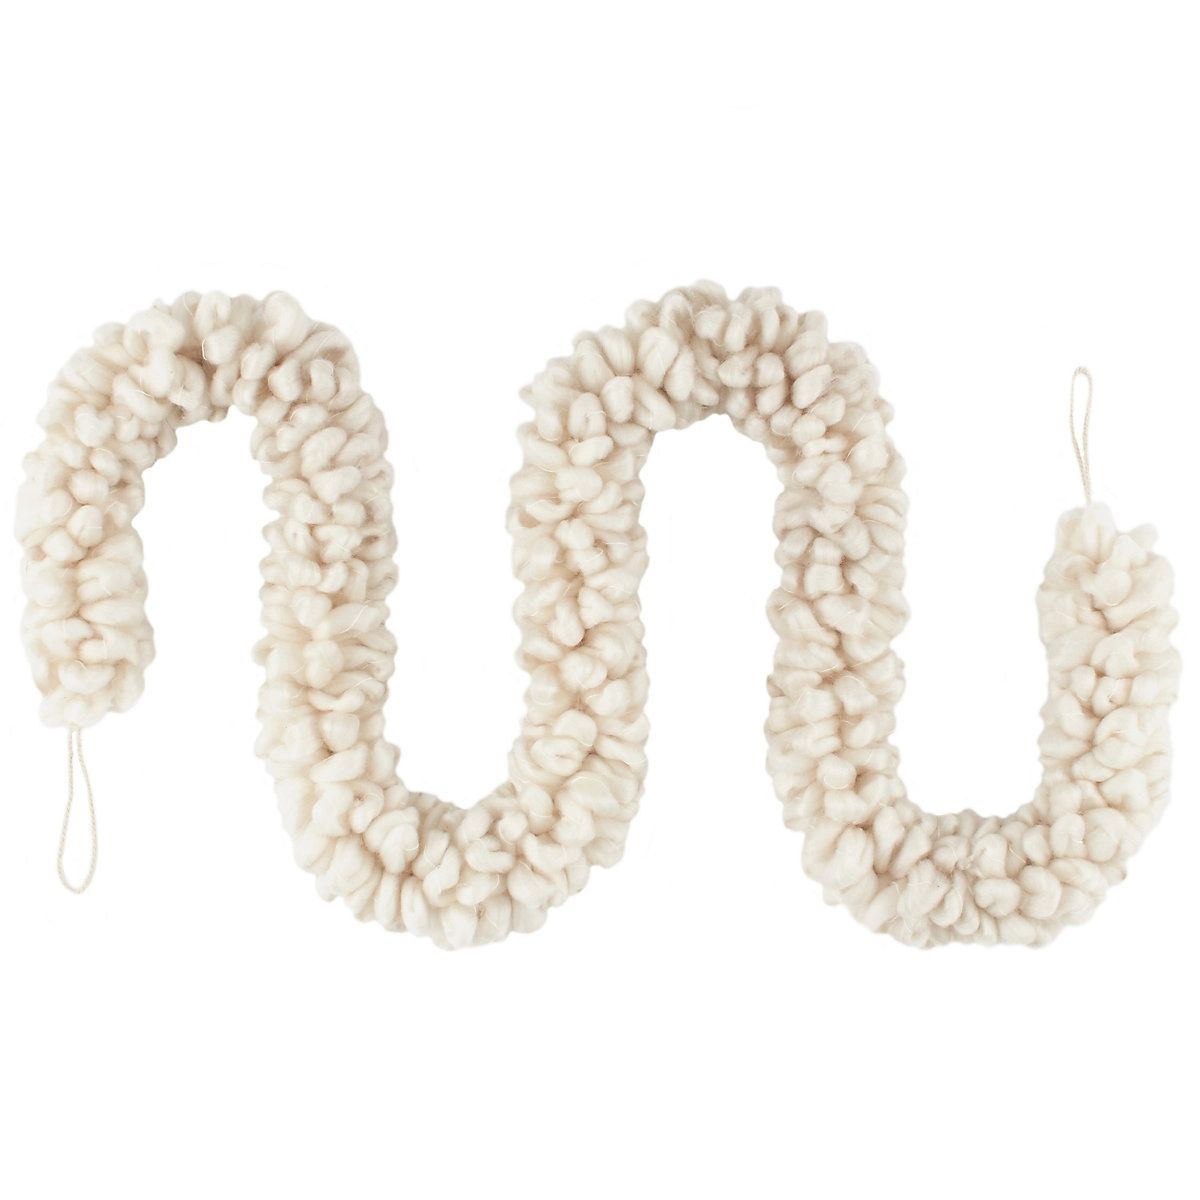 White Yarn Looped Garland | Annie Selke